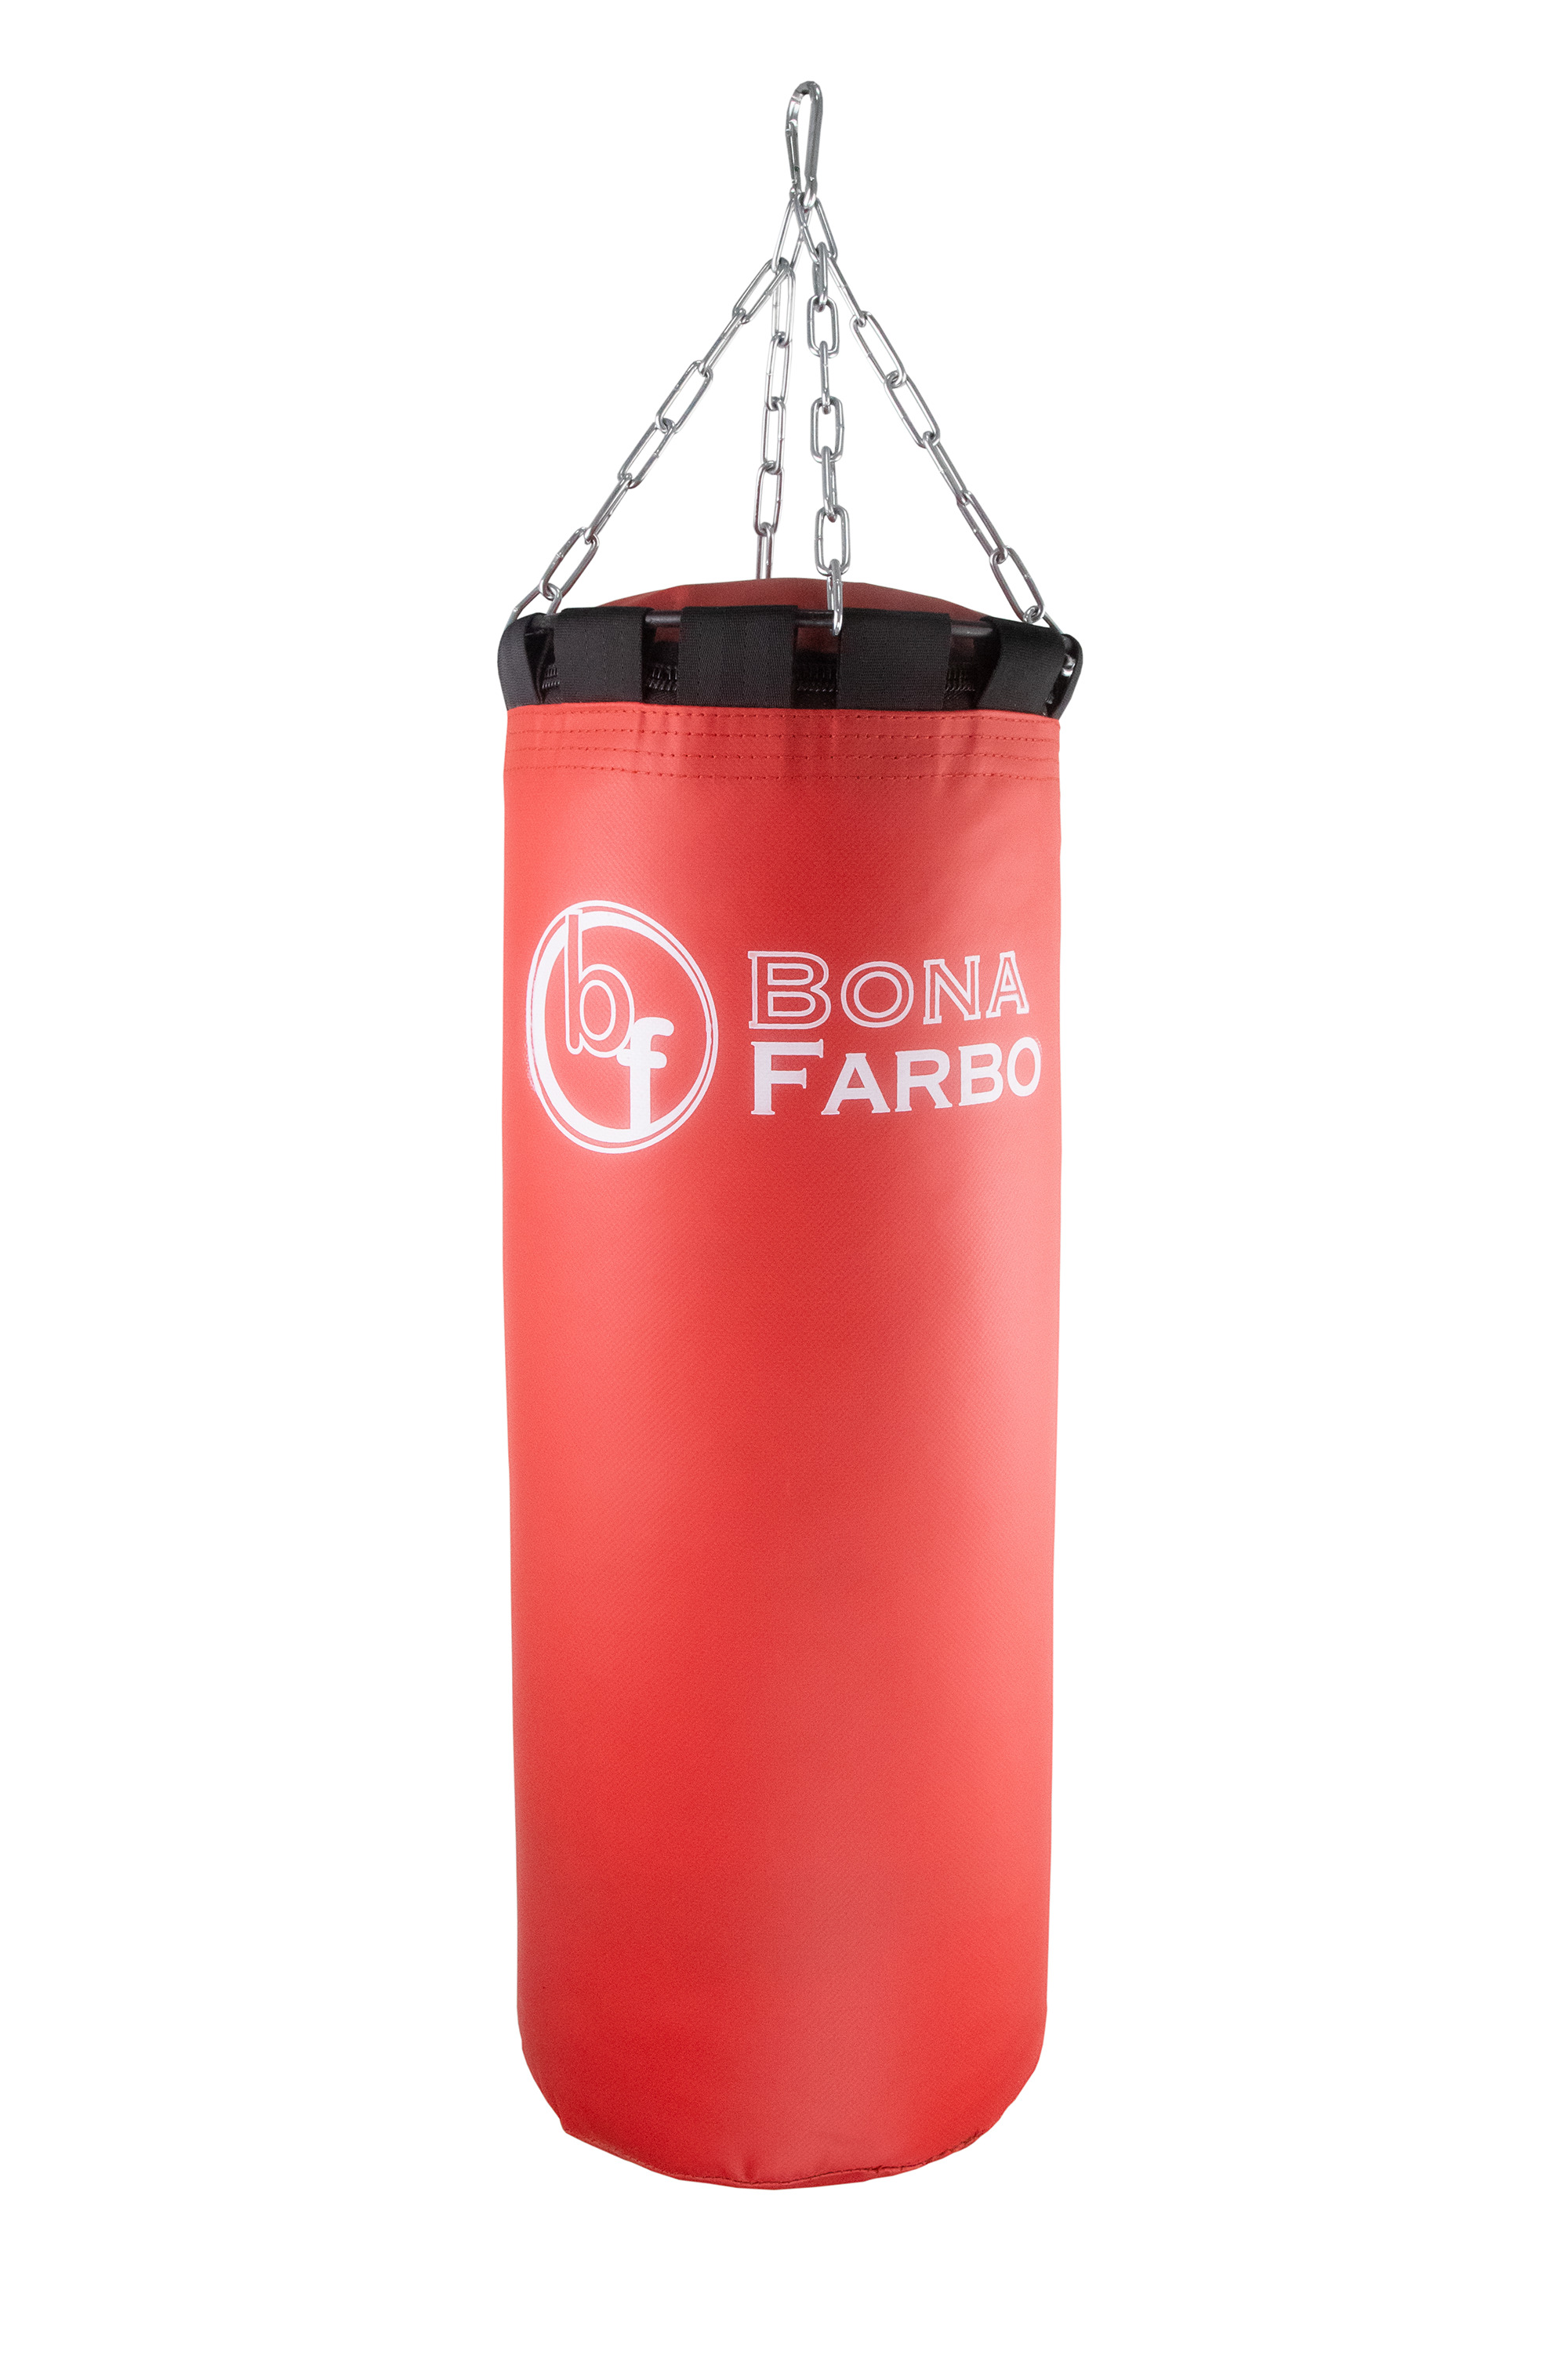 фото Боксерский мешок bf20 кг, кожзам, резиновый текстиль, красный. bona farbo